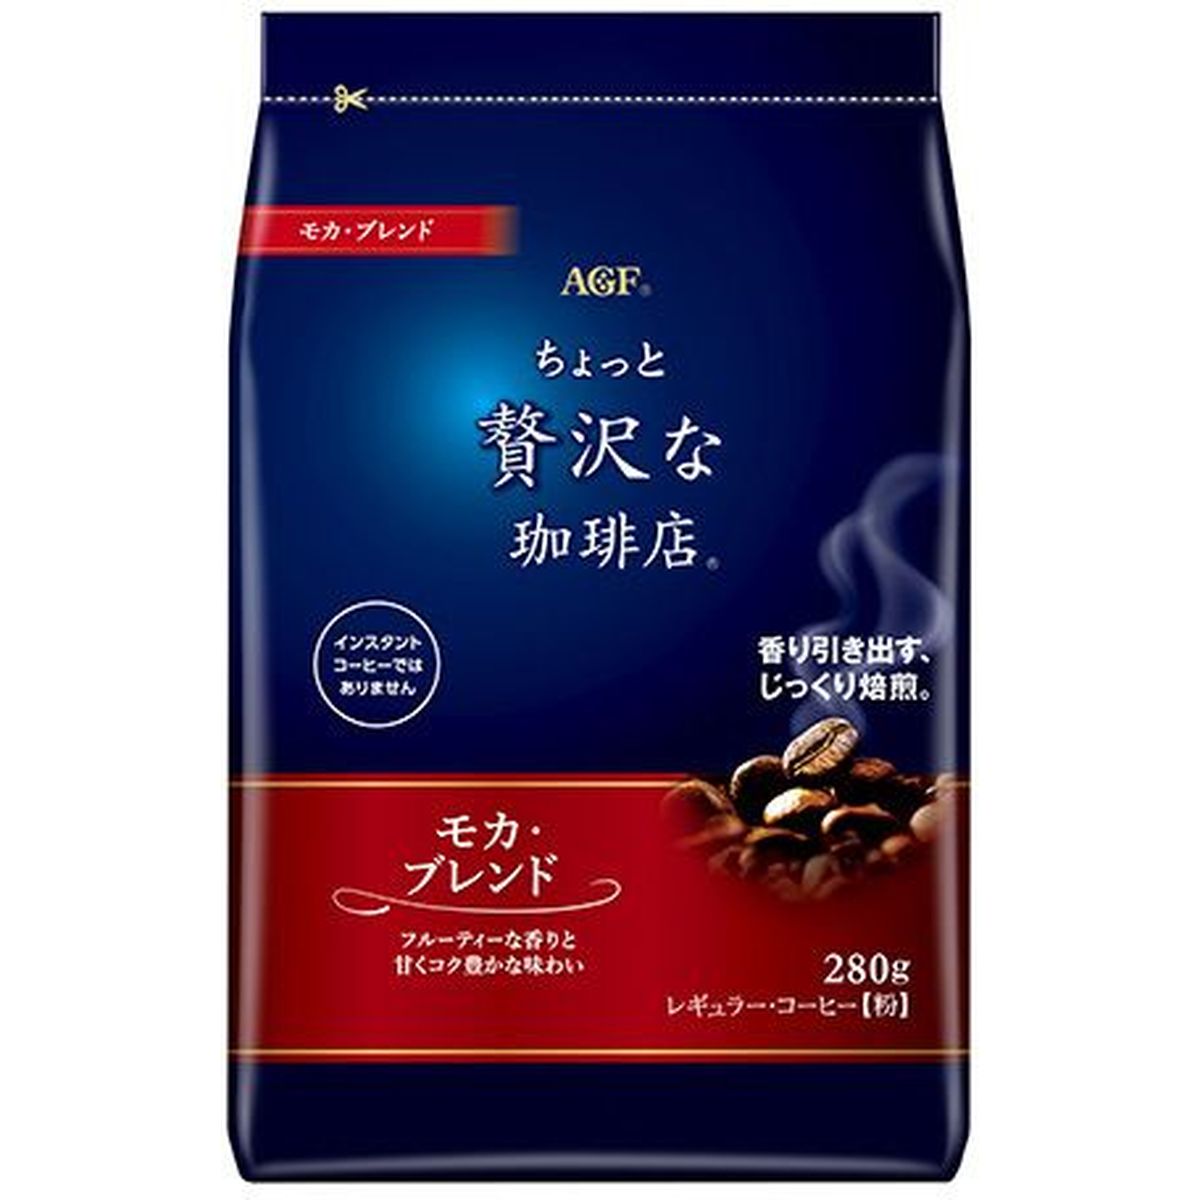 【12個入リ】AGF 贅沢レギュラーコーヒー モカ 280g